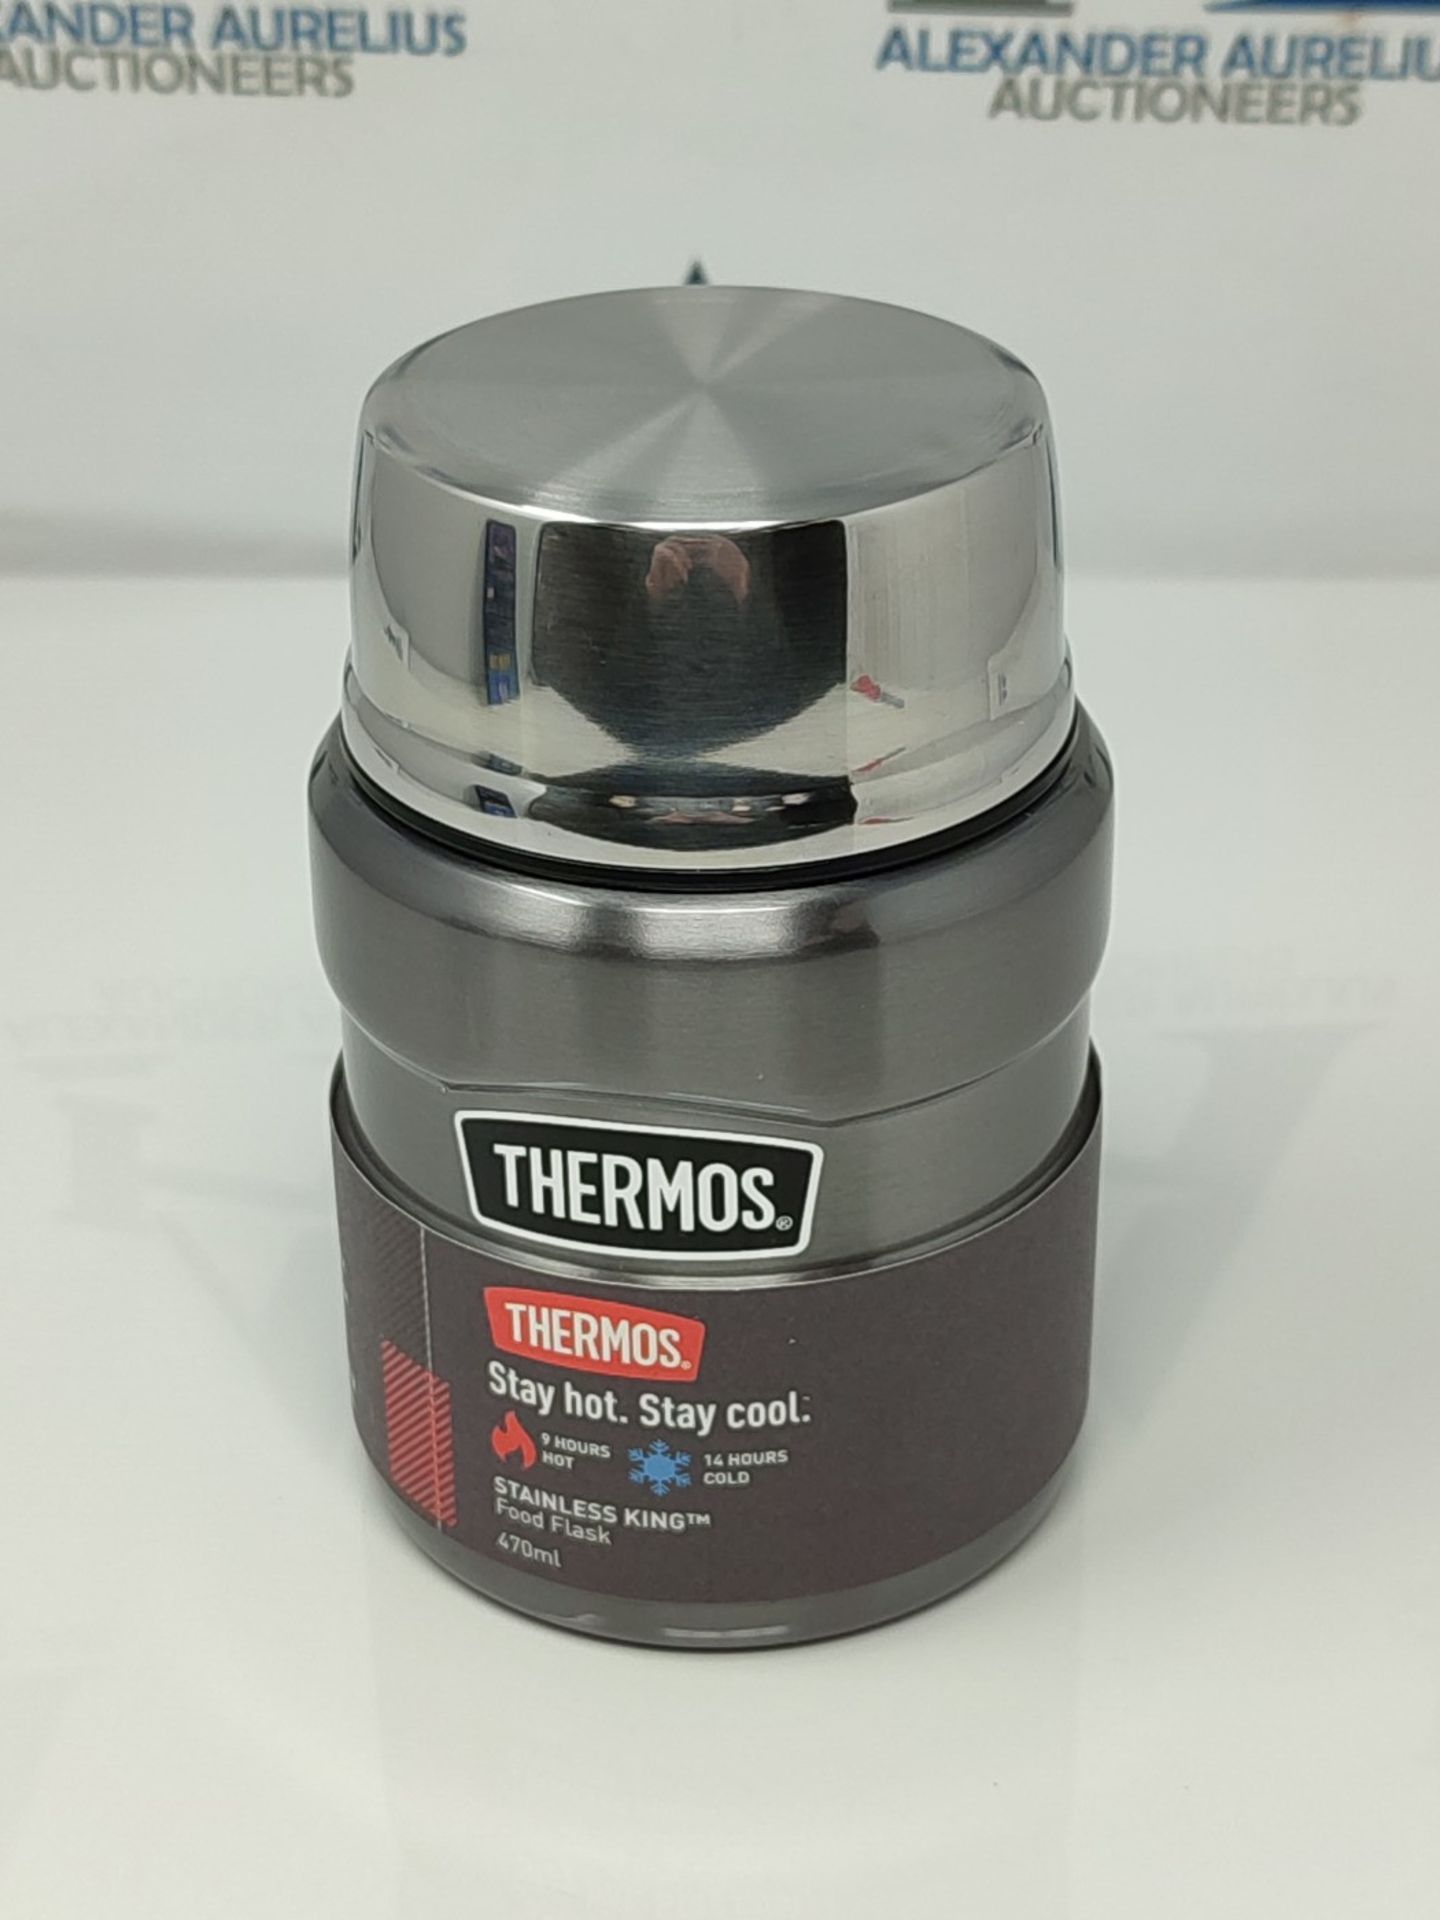 Thermos Stainless King Food Flask, Gun Metal, 470 ml, 105053 - Image 2 of 3